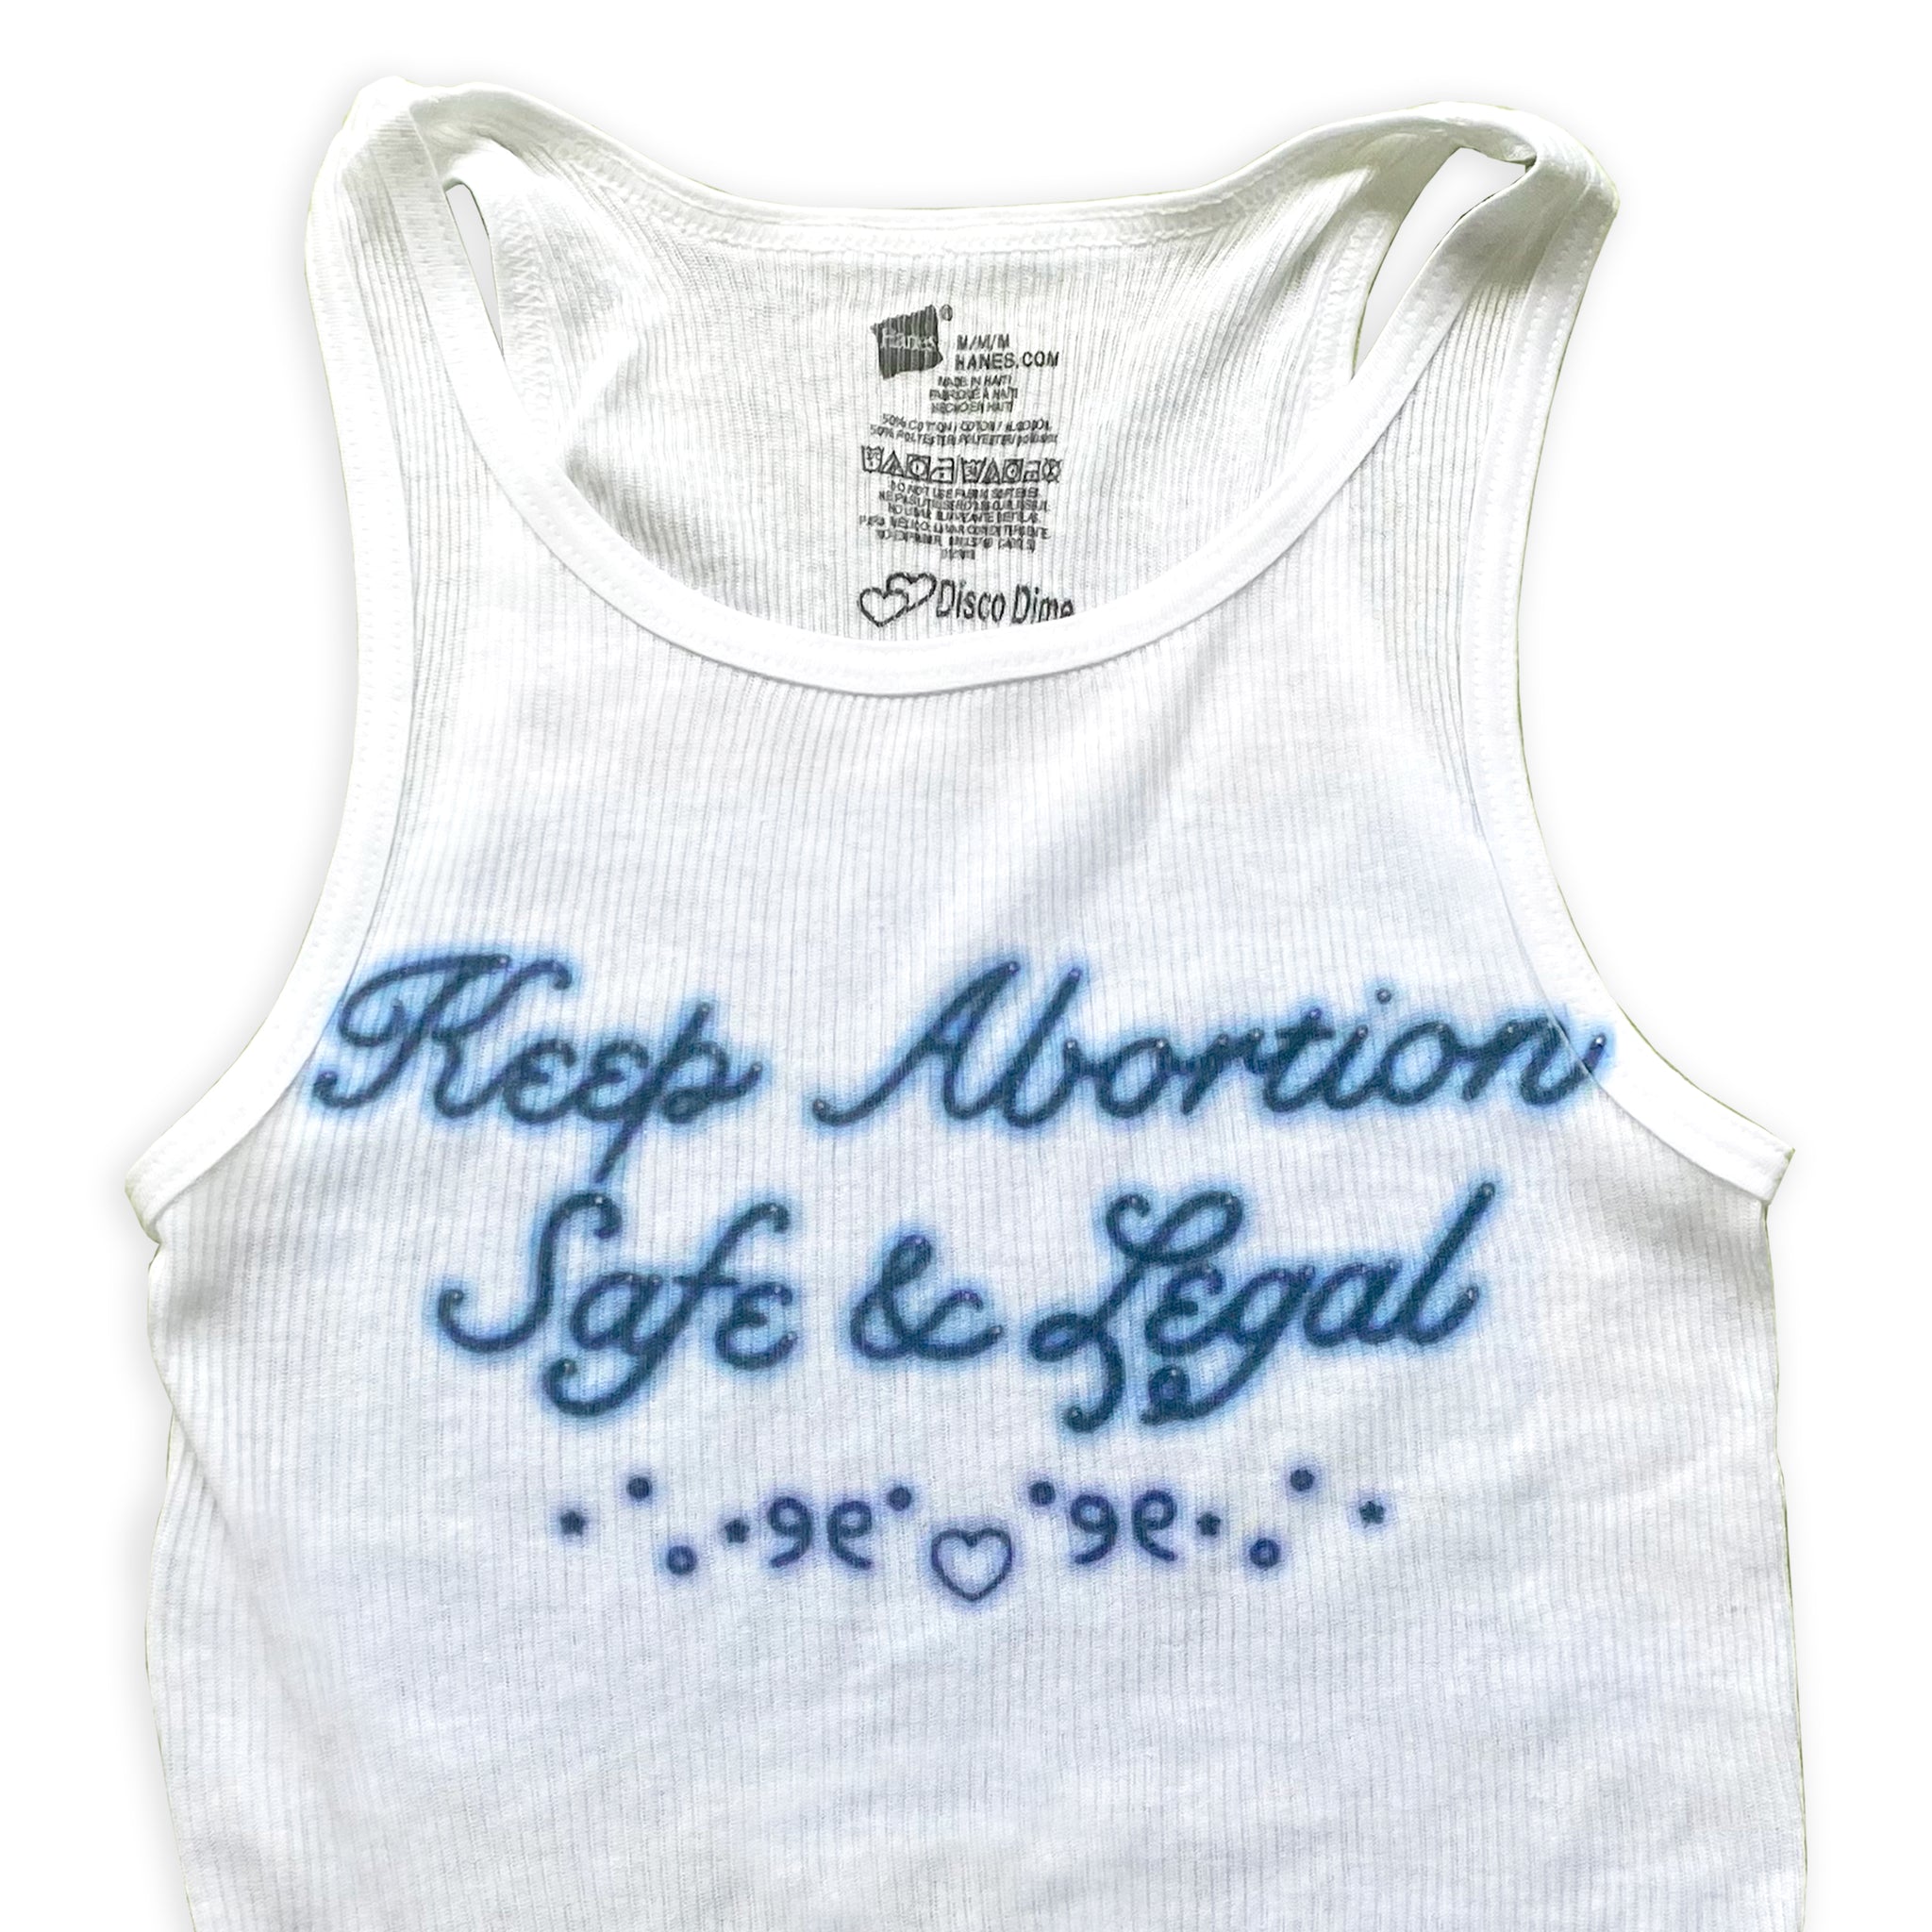 Halten Sie Abtreibung sicher und legal. Tank-Top